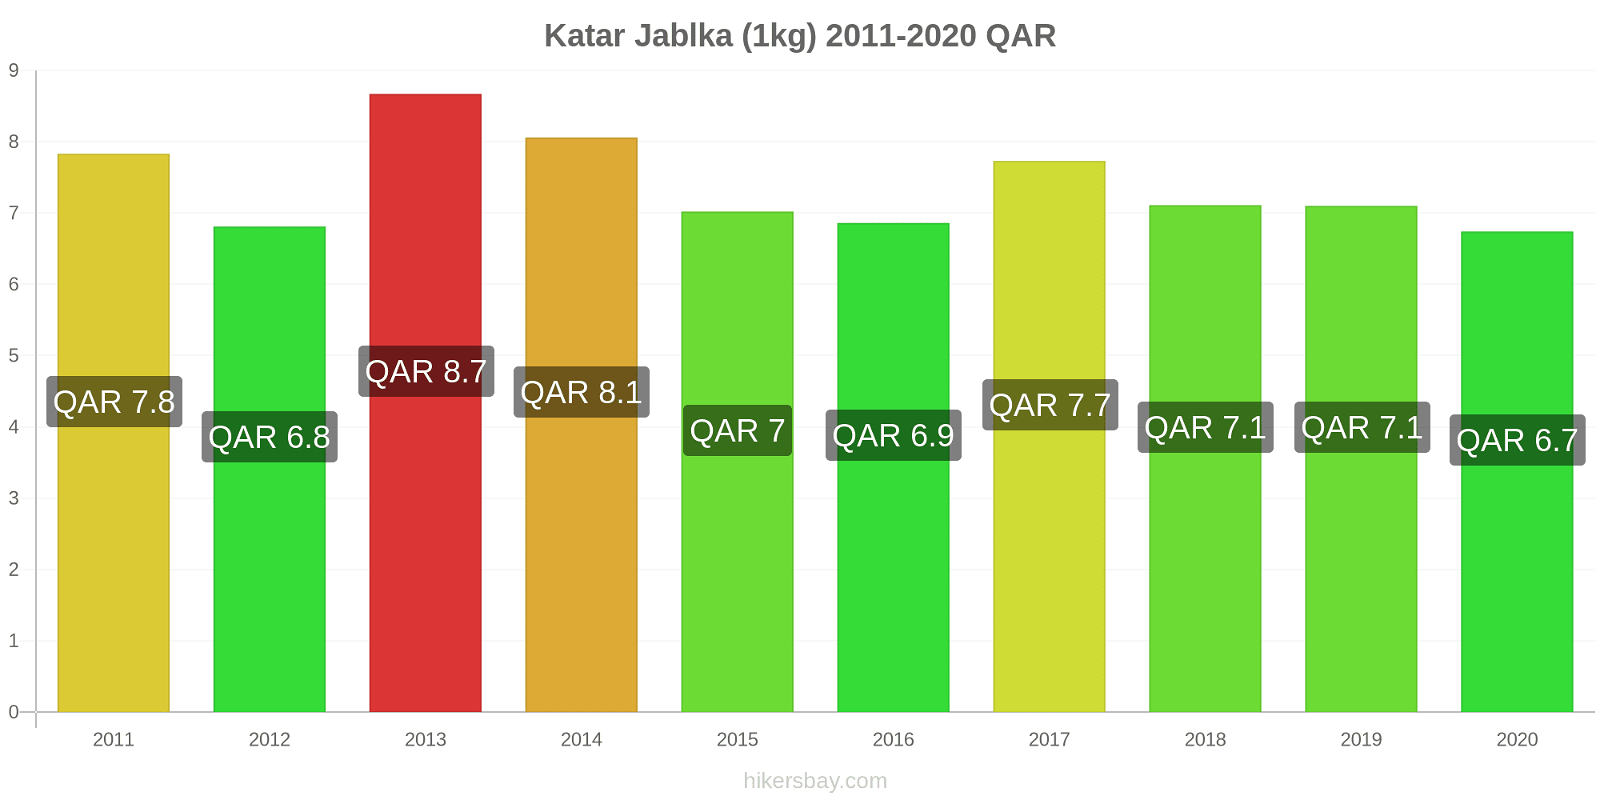 Katar změny cen Jablka (1kg) hikersbay.com